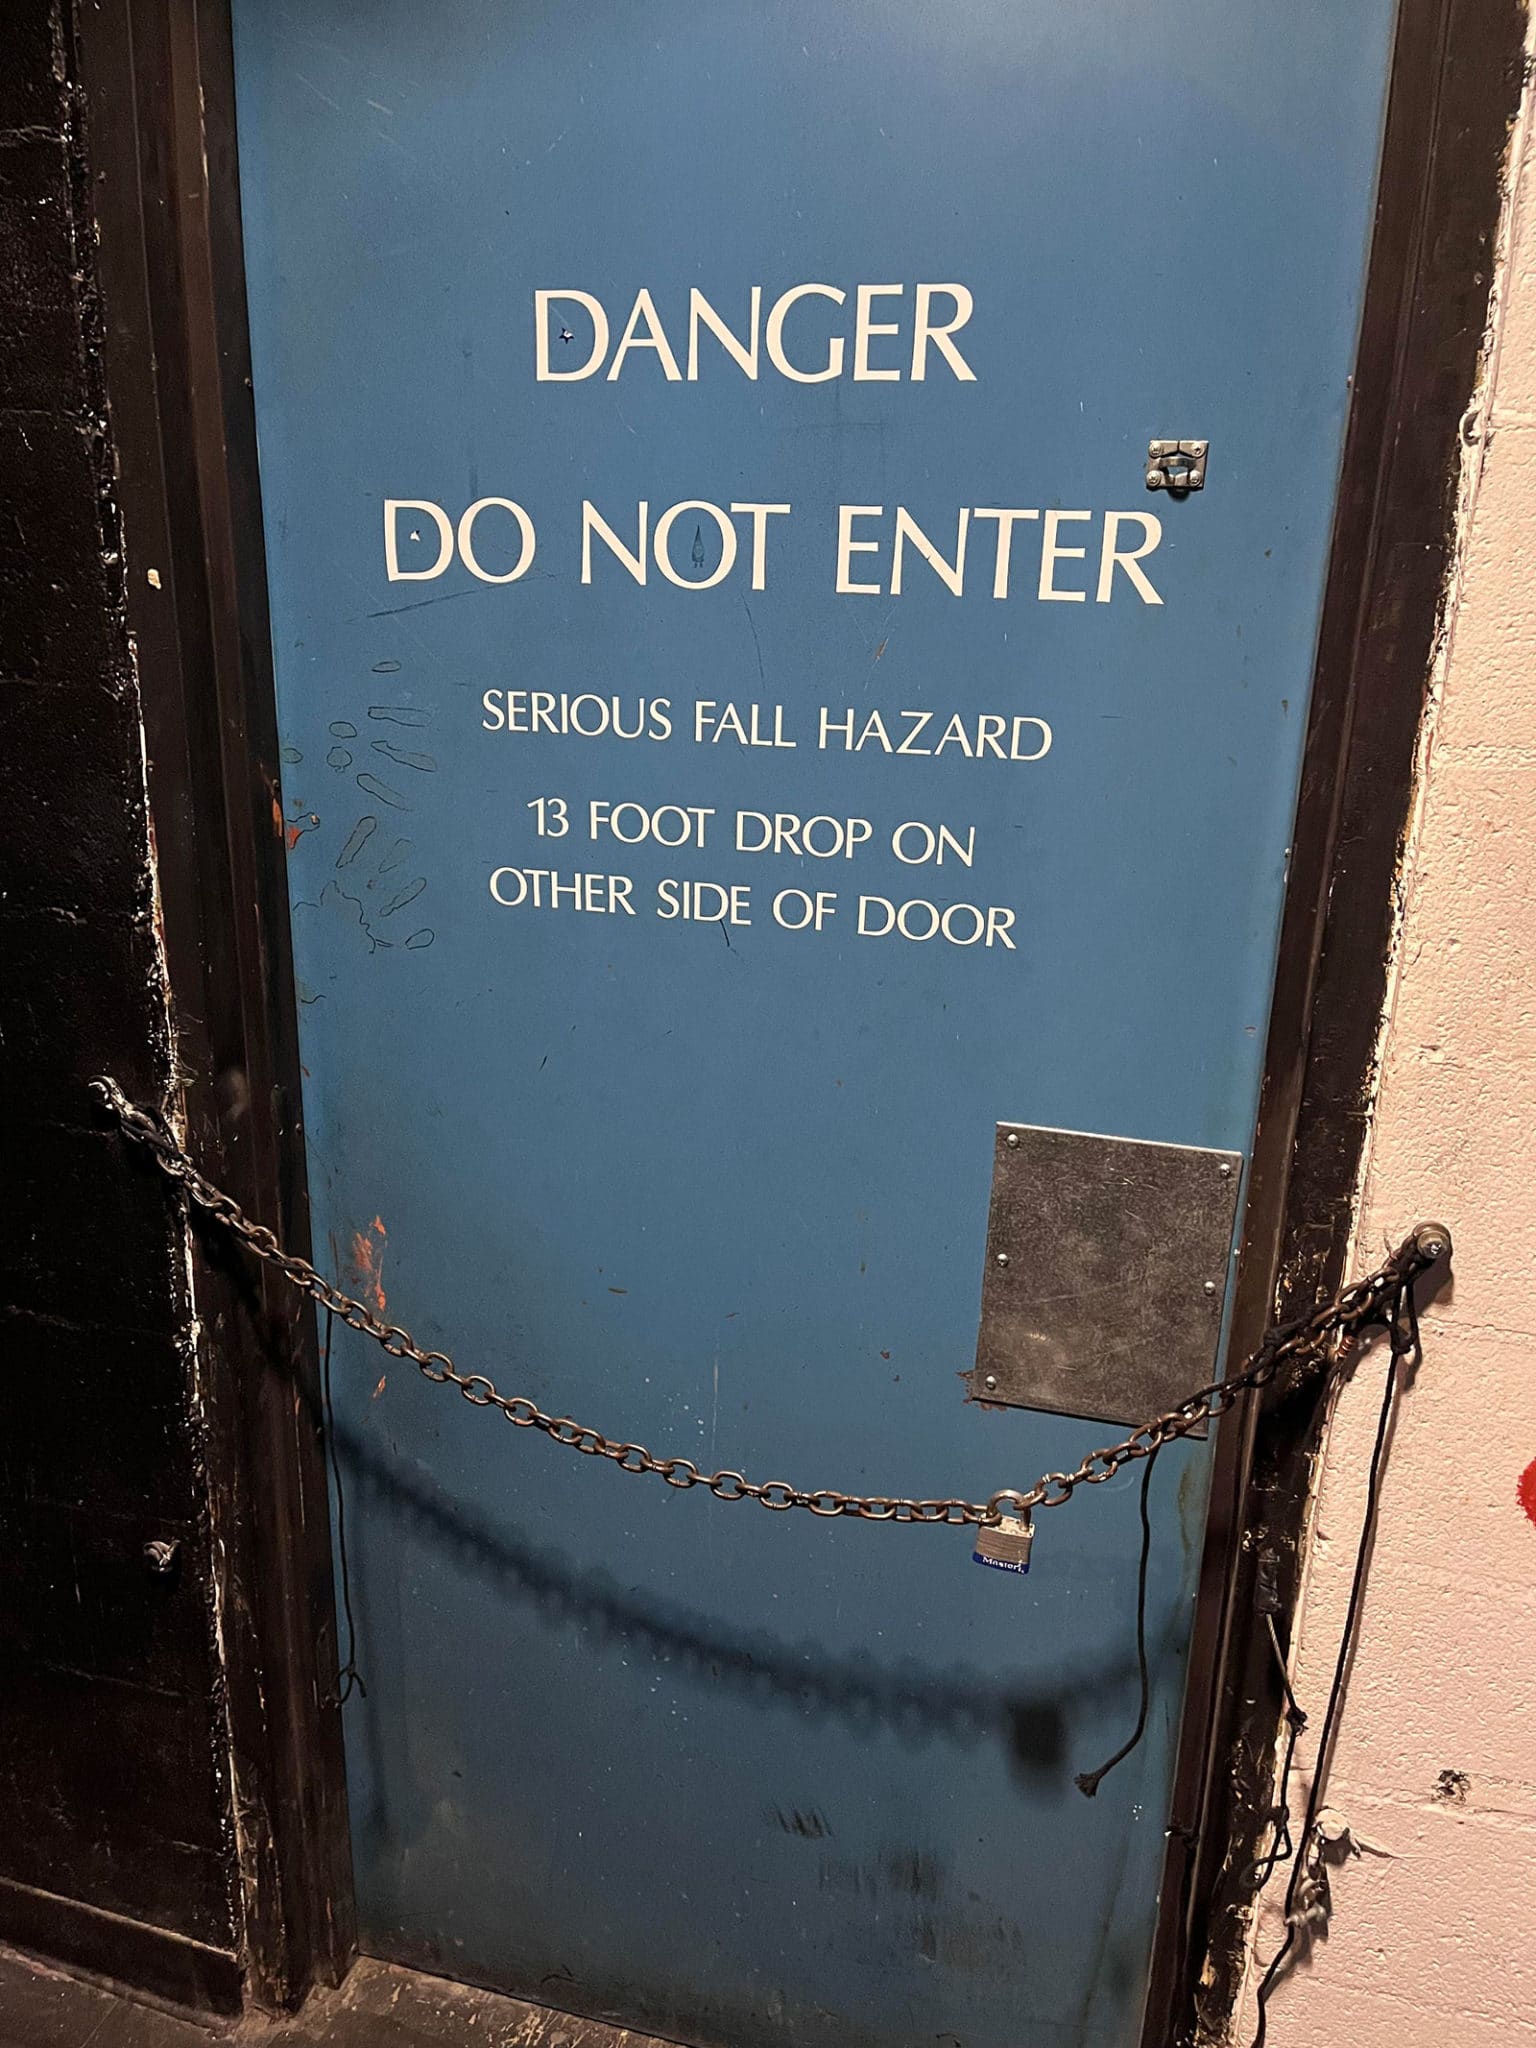 Blue door with text "Danger: Do Not Enter. Serious Fall Hazard. 13 Foot Drop on Other Side of Door"